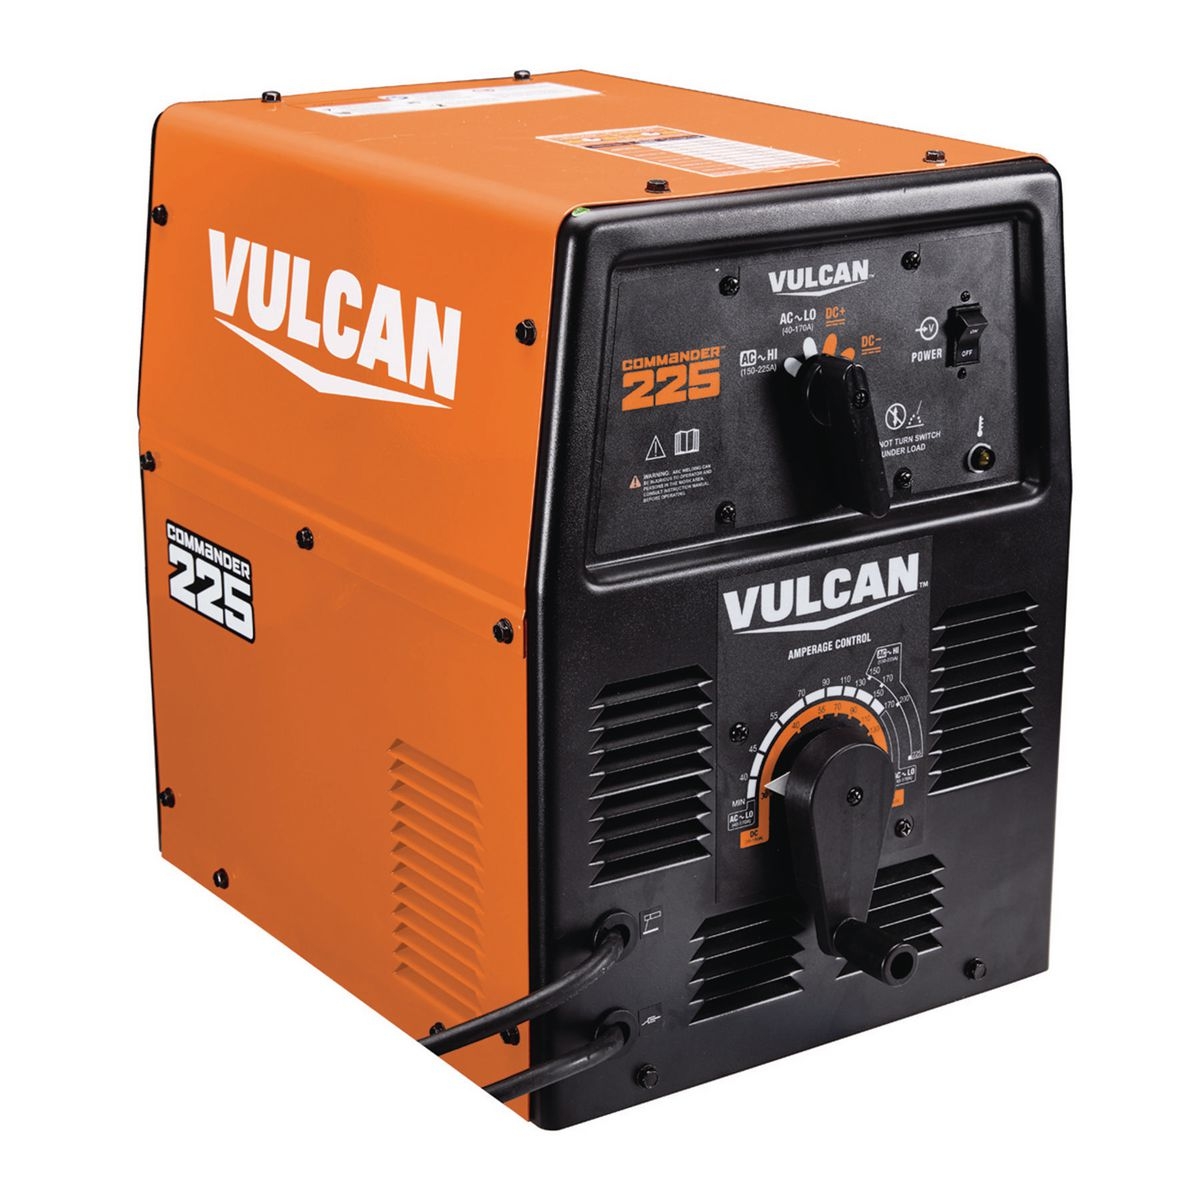 VULCAN Commander Stick Industrial Welder 225A AC / 150A DC 230 Volt Input - Item 63620